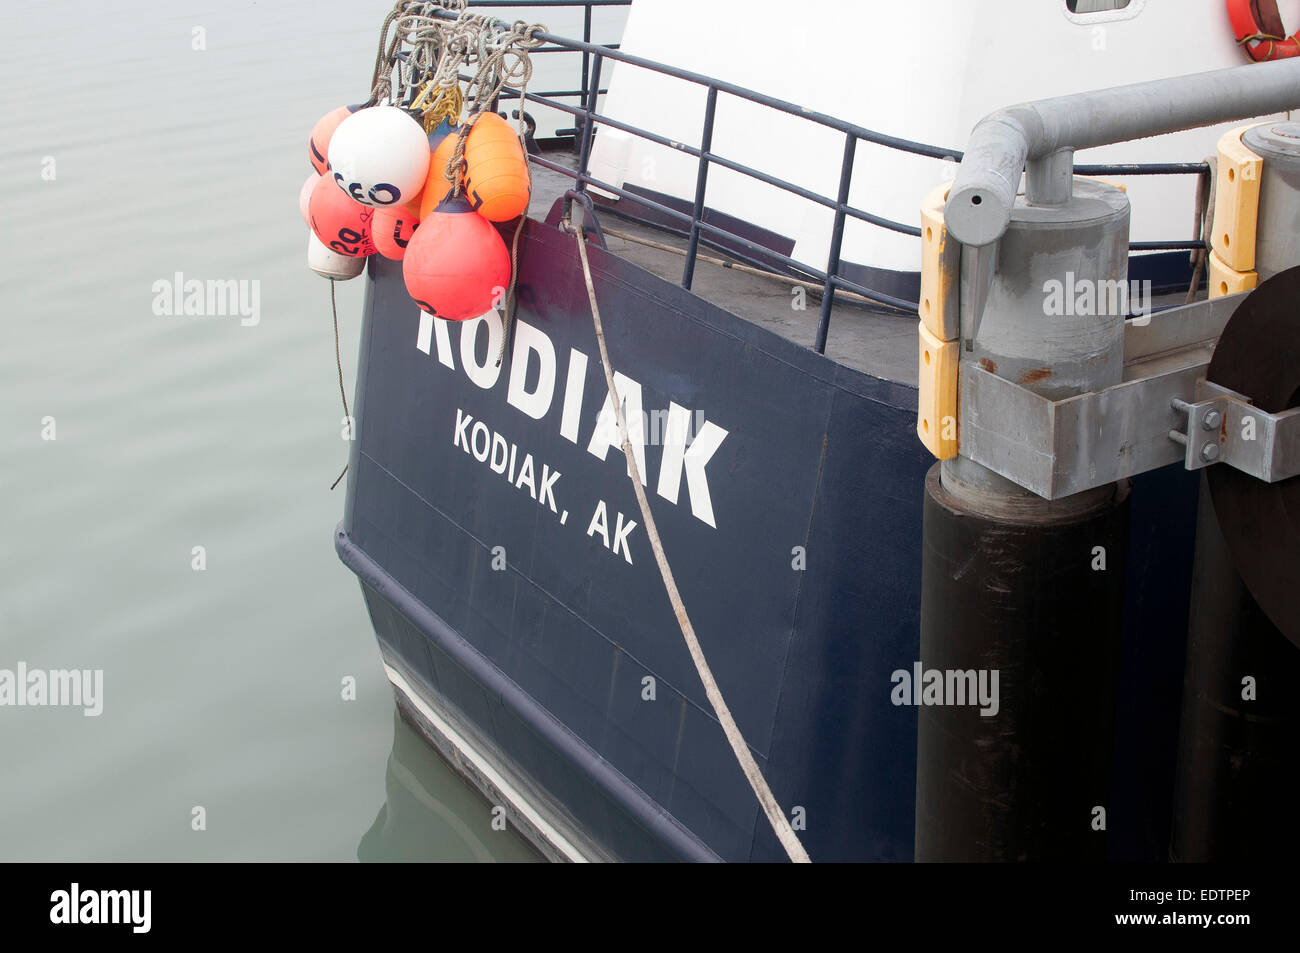 Angelboot/Fischerboot Kodiak am dock Stockfoto